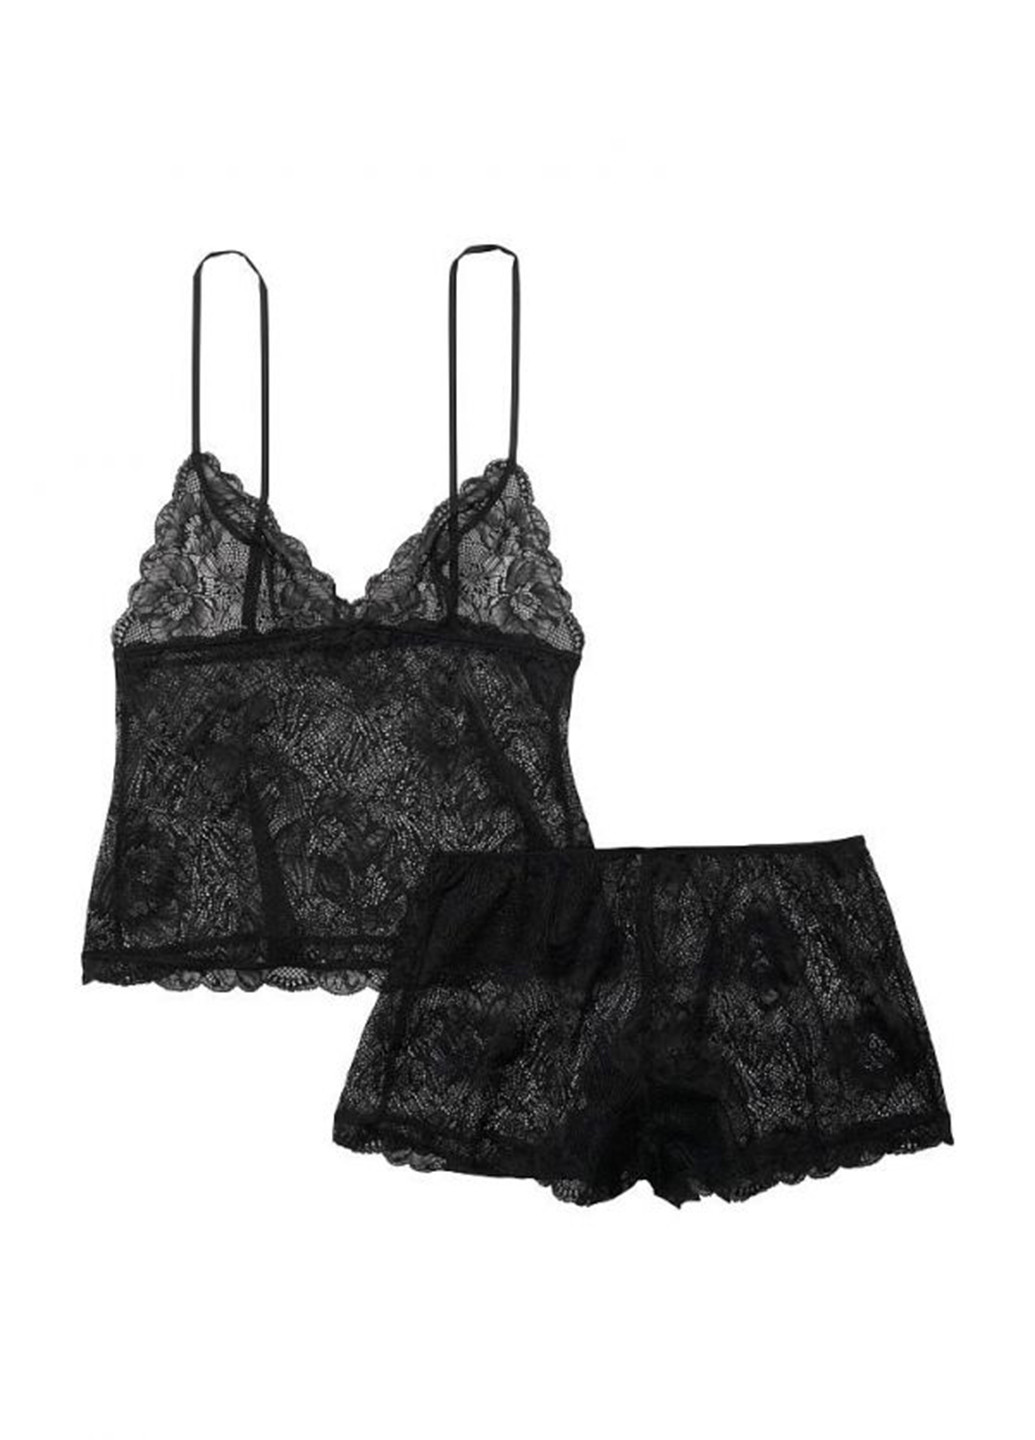 Черная всесезон пижама (топ, шорты) топ + шорты Victoria's Secret